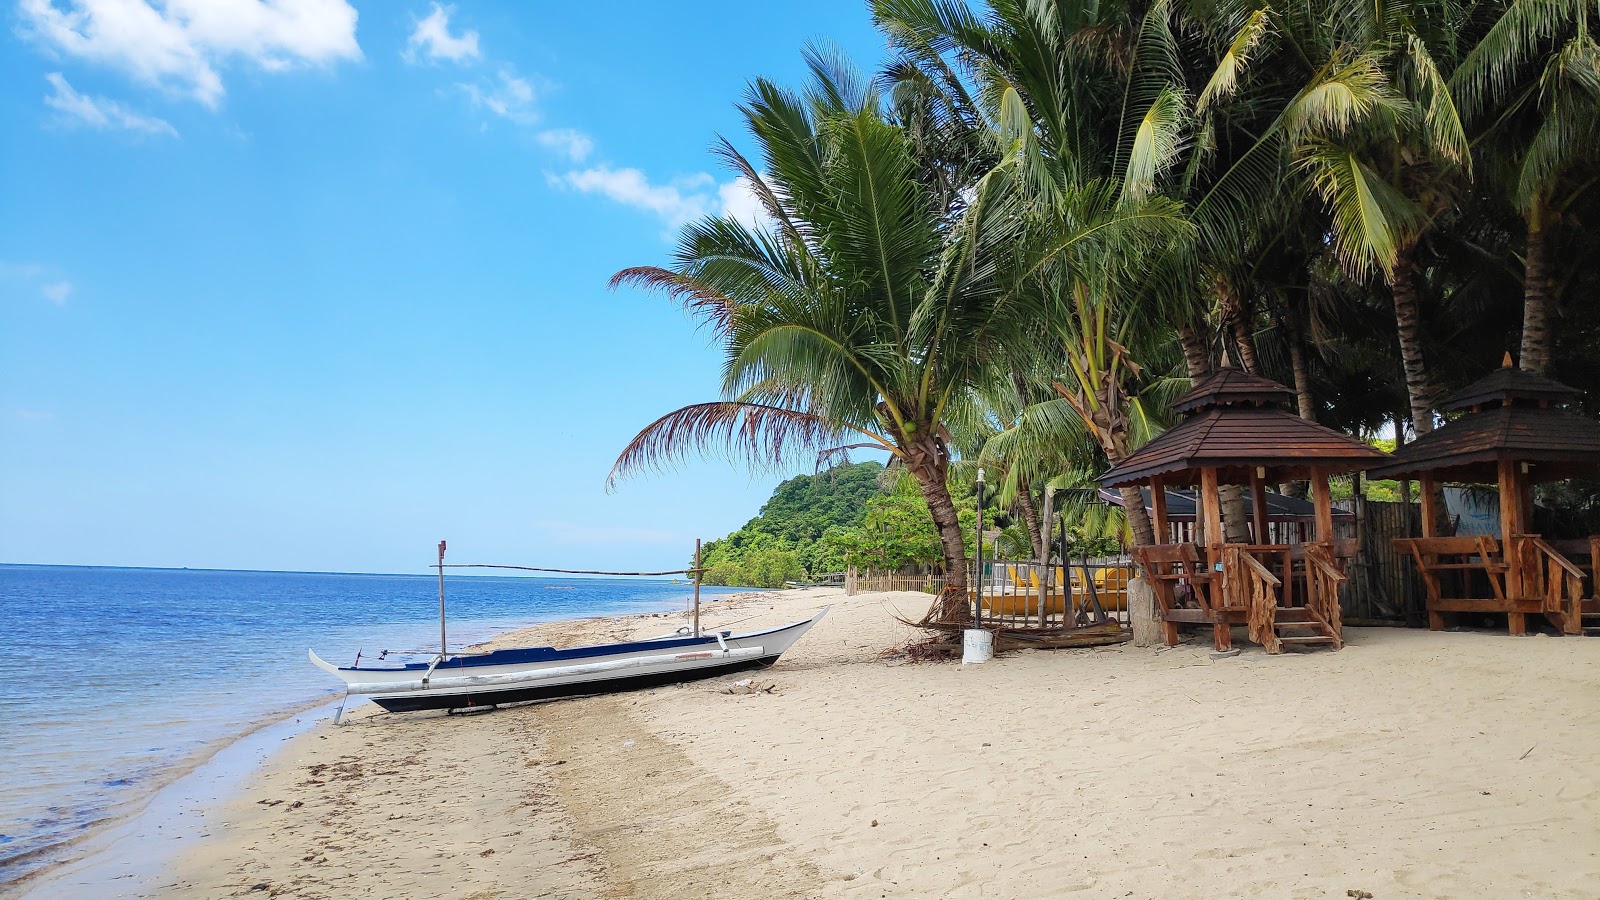 Fotografija Lian batangas beach priljubljeno mesto med poznavalci sprostitve